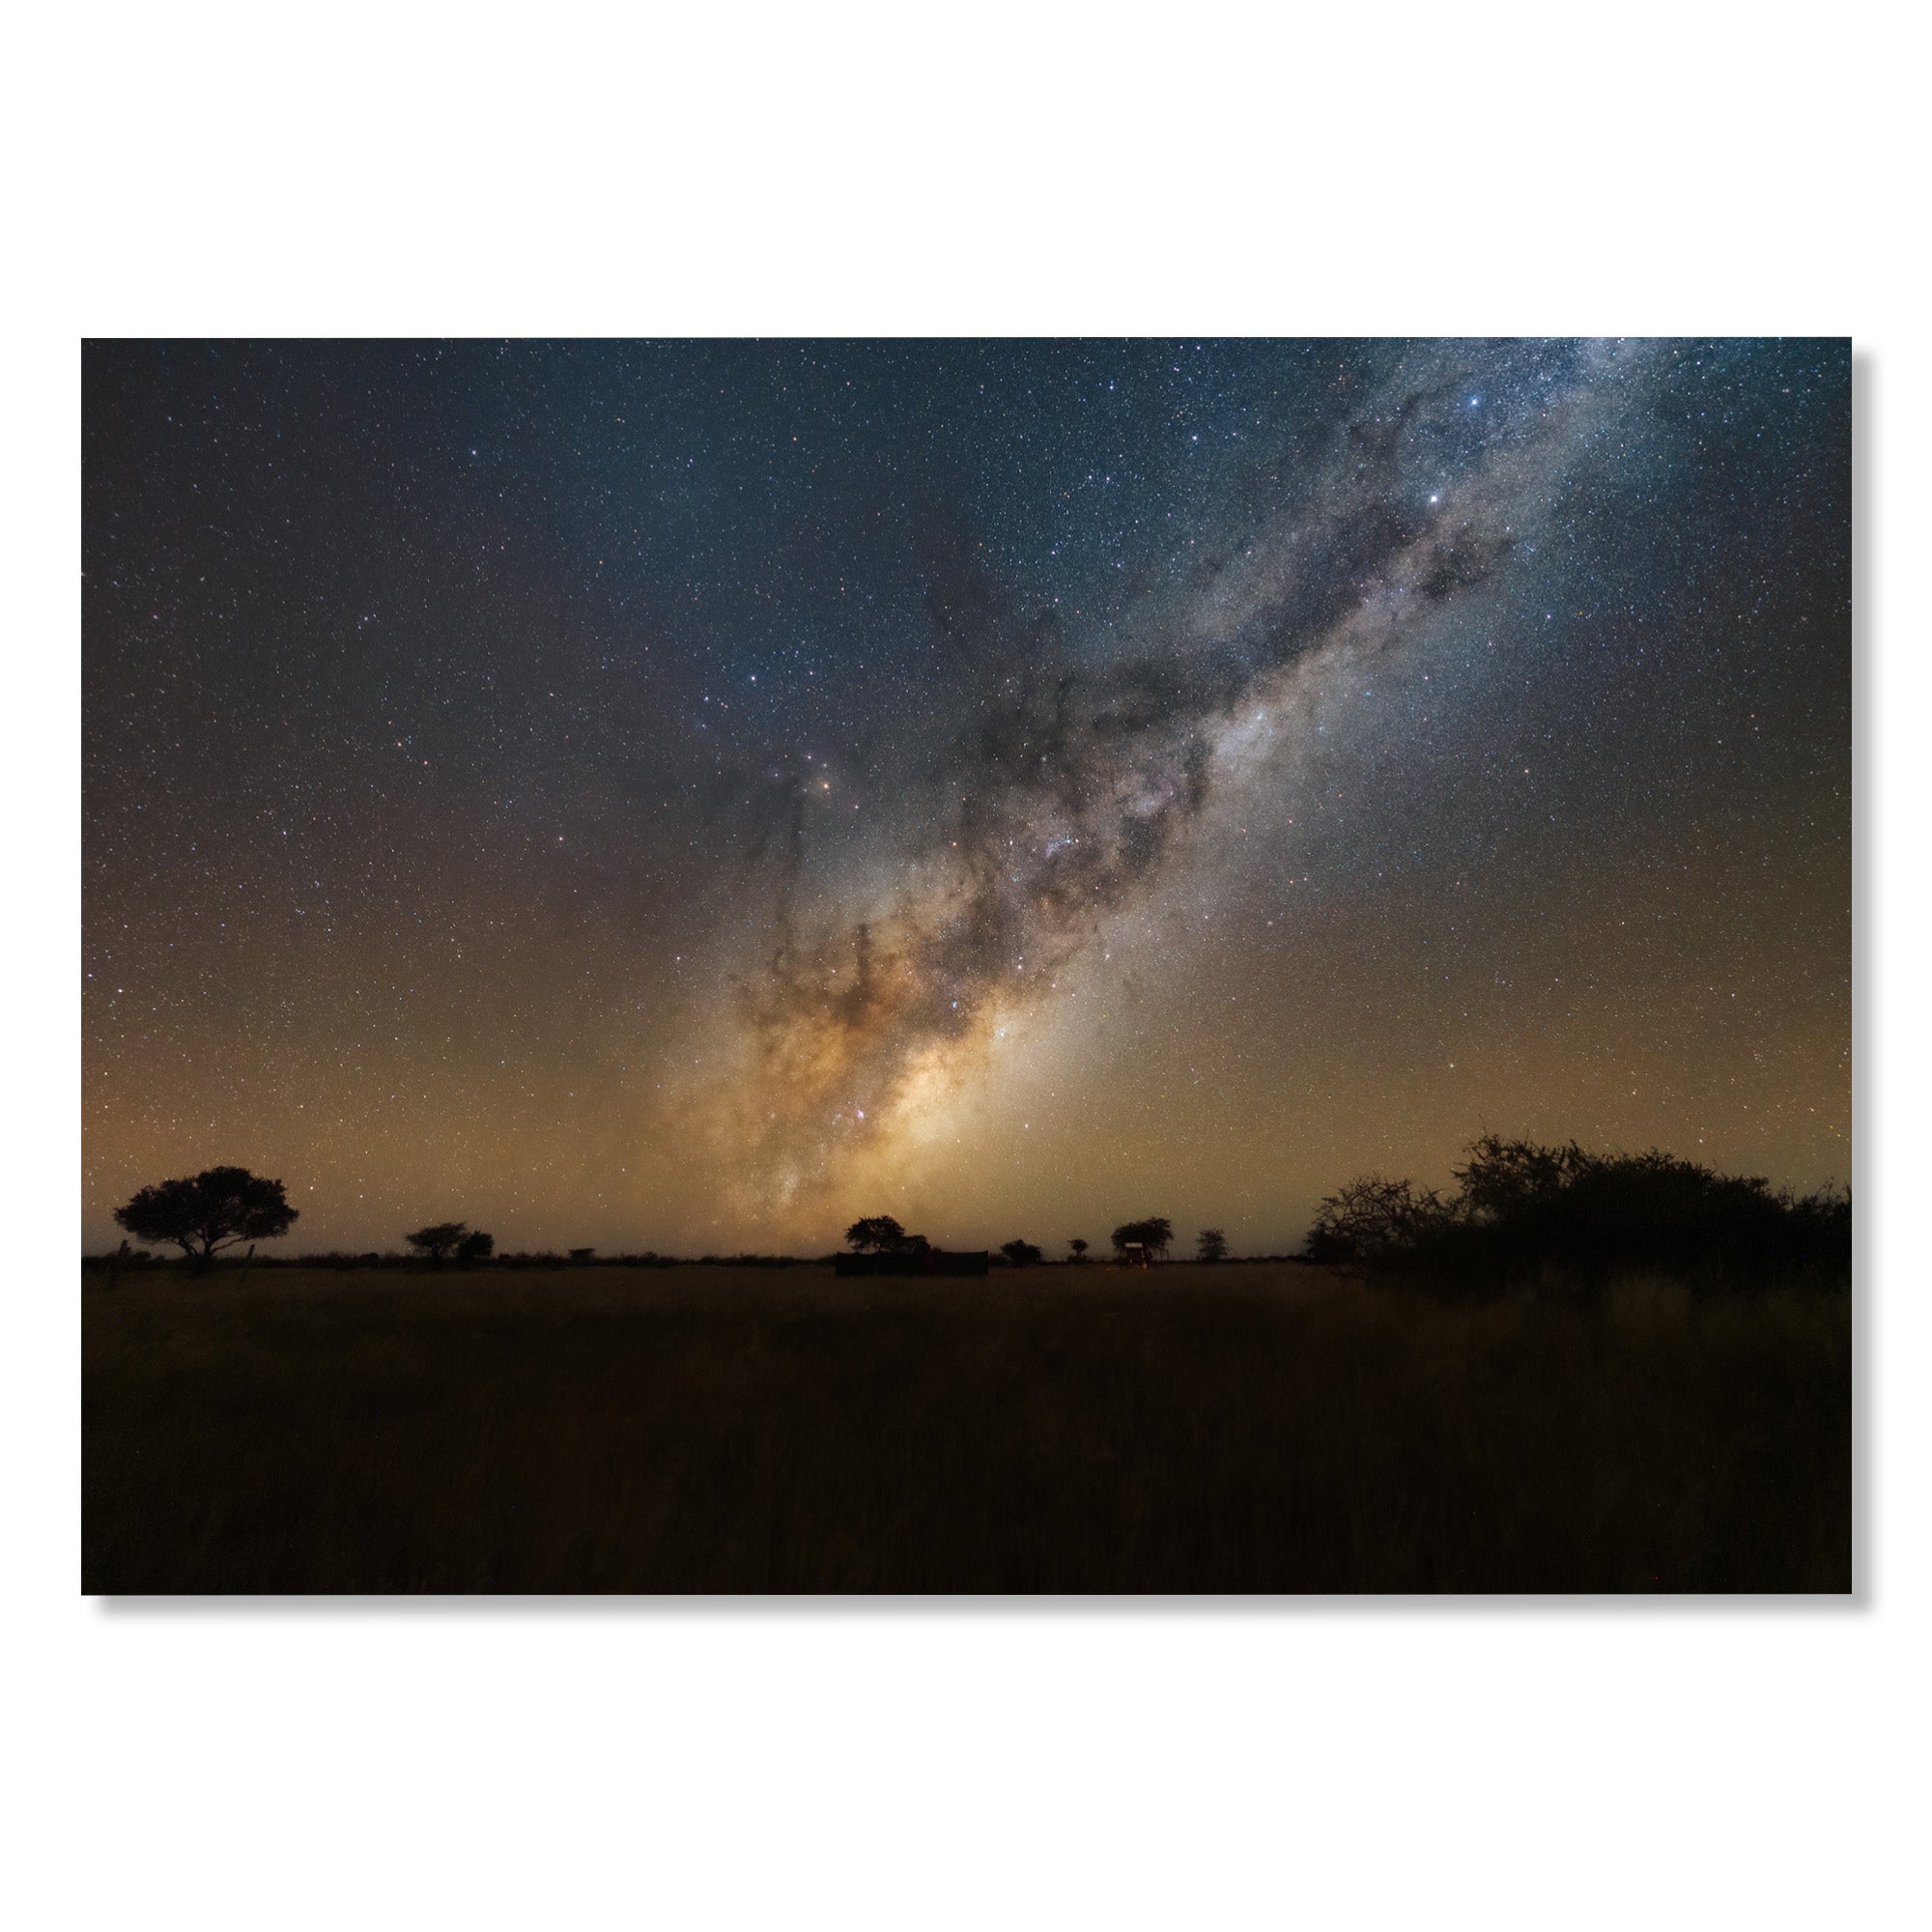 Namibian sky - Gigalaxy